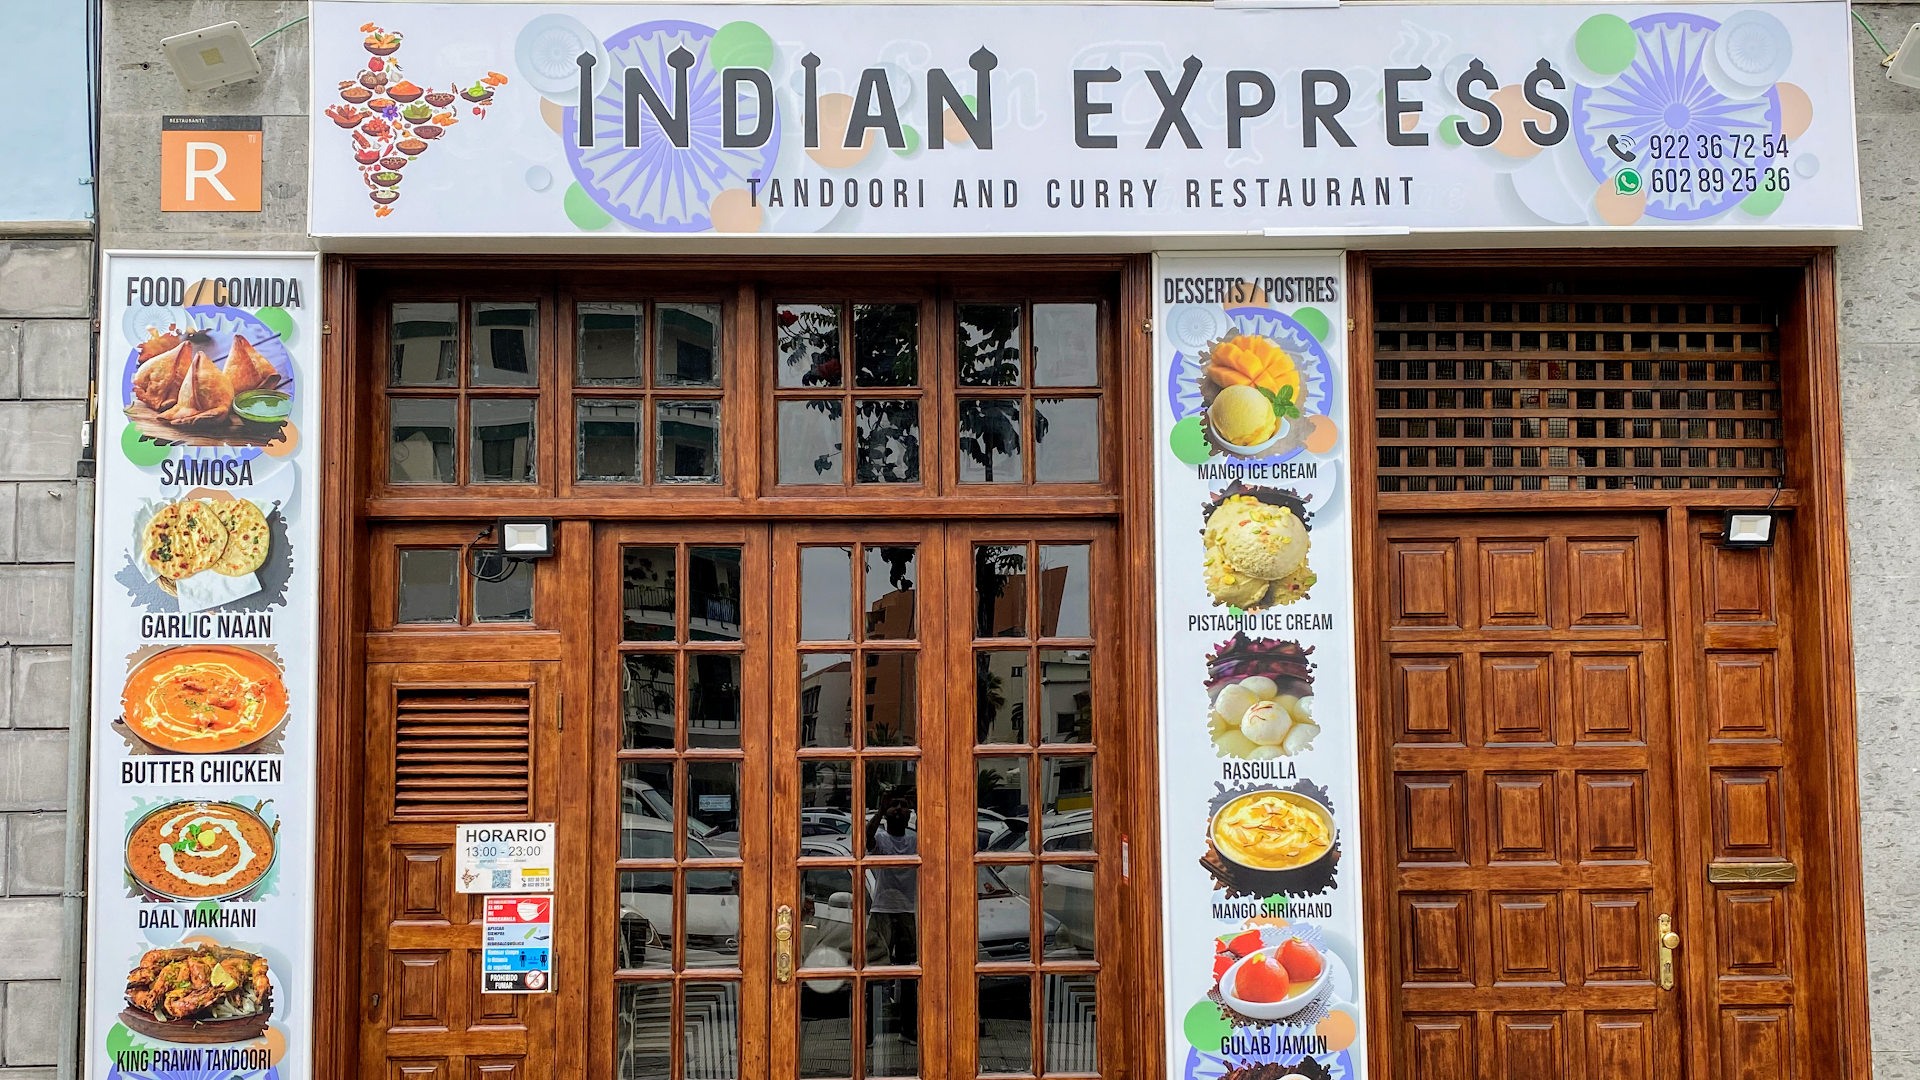 Impressionen Restaurante Indian Express Puerto de la Cruz